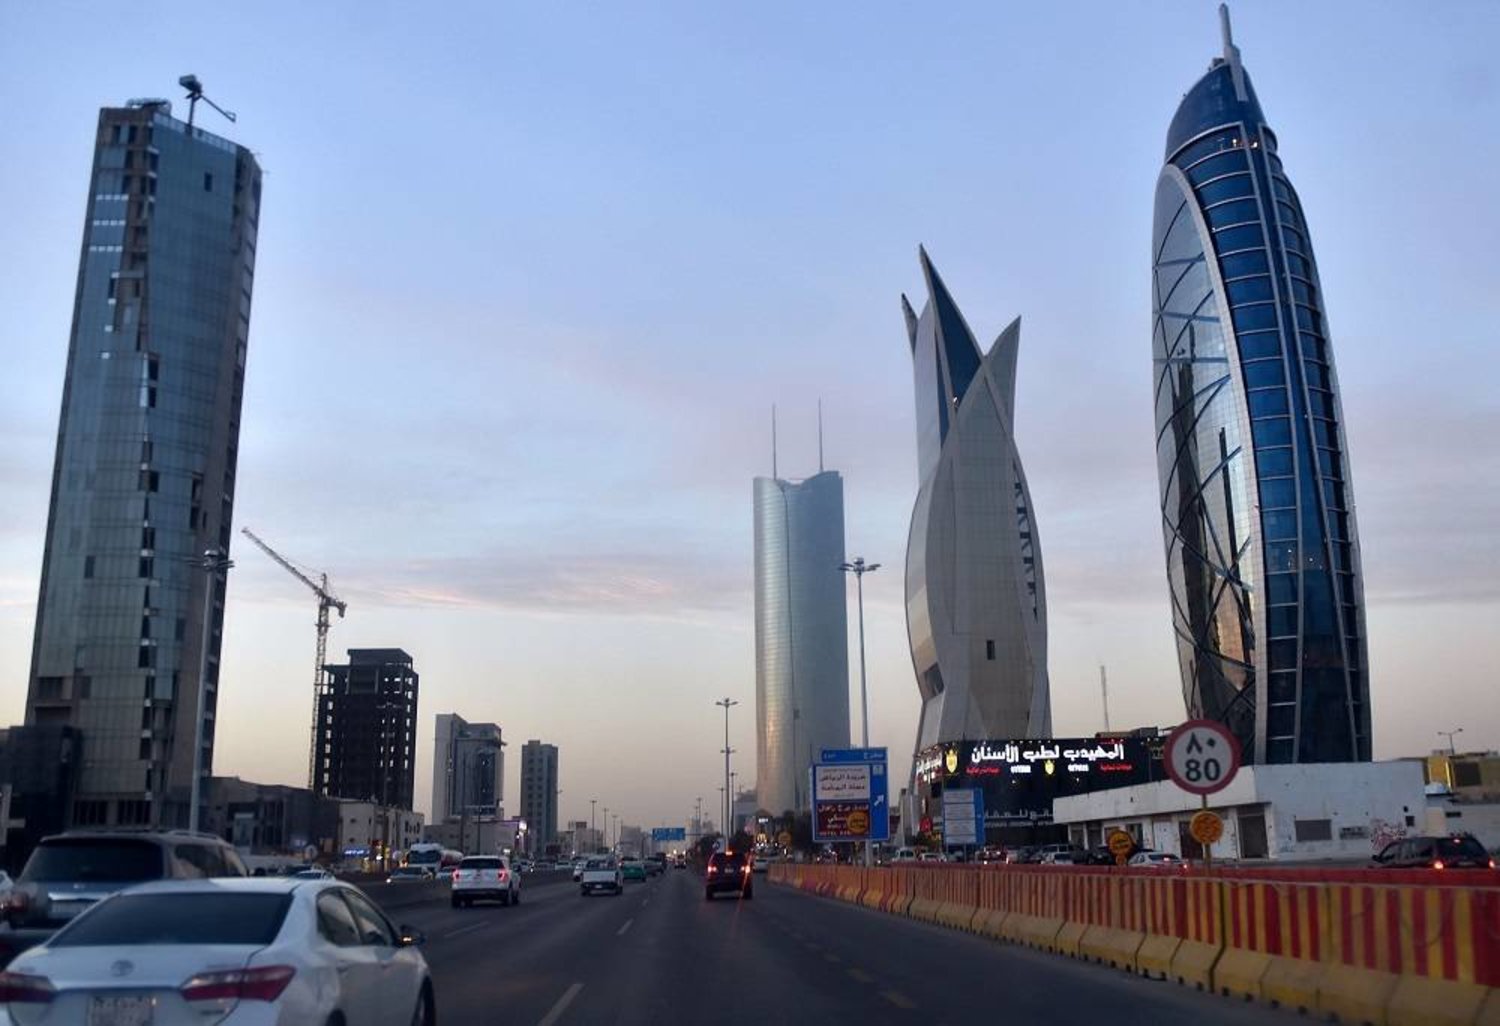 Riyadh Skyscrapers tower over a highway in the main financial hub, Riyadh, Saudi Arabia, Dec. 16, 2020. (AFP)